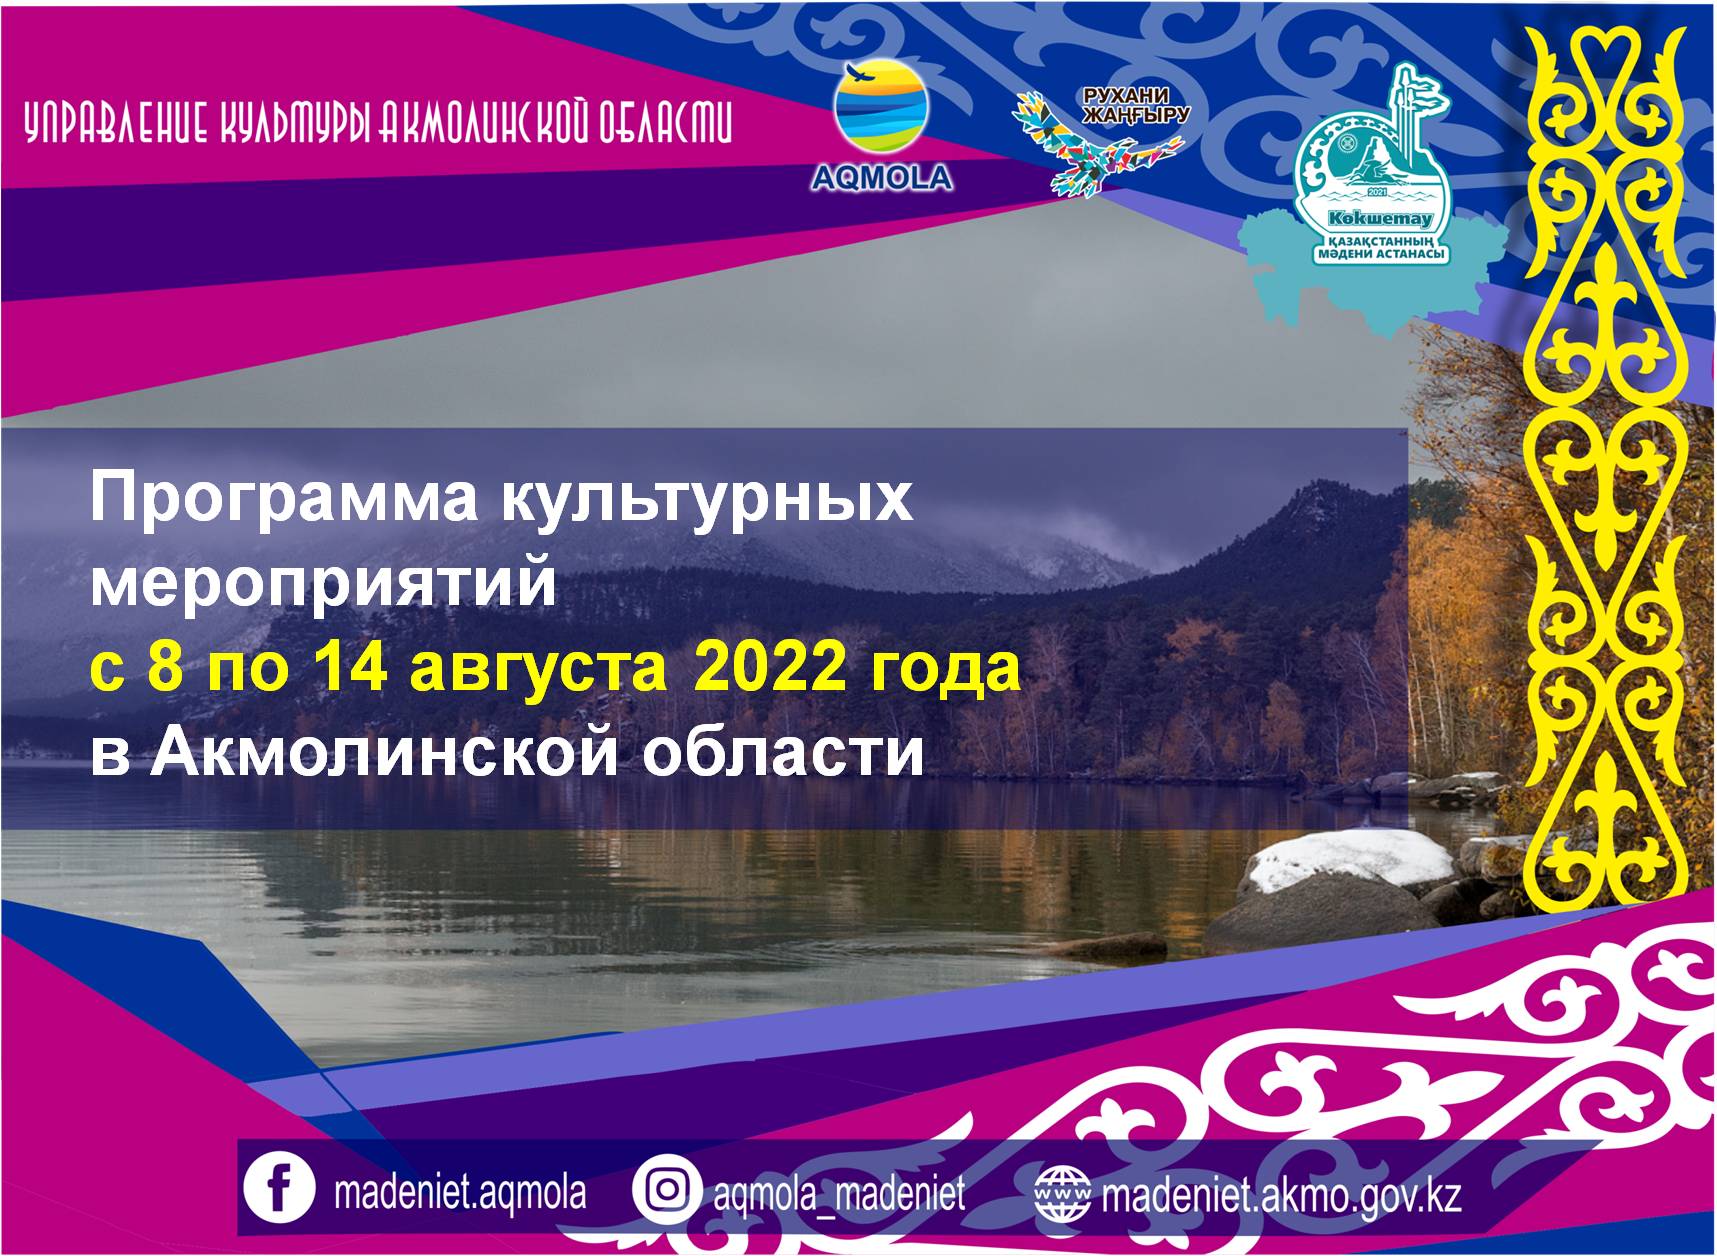 Программа культурных мероприятий с 8 по 14 августа 2022 года в Акмолинской области